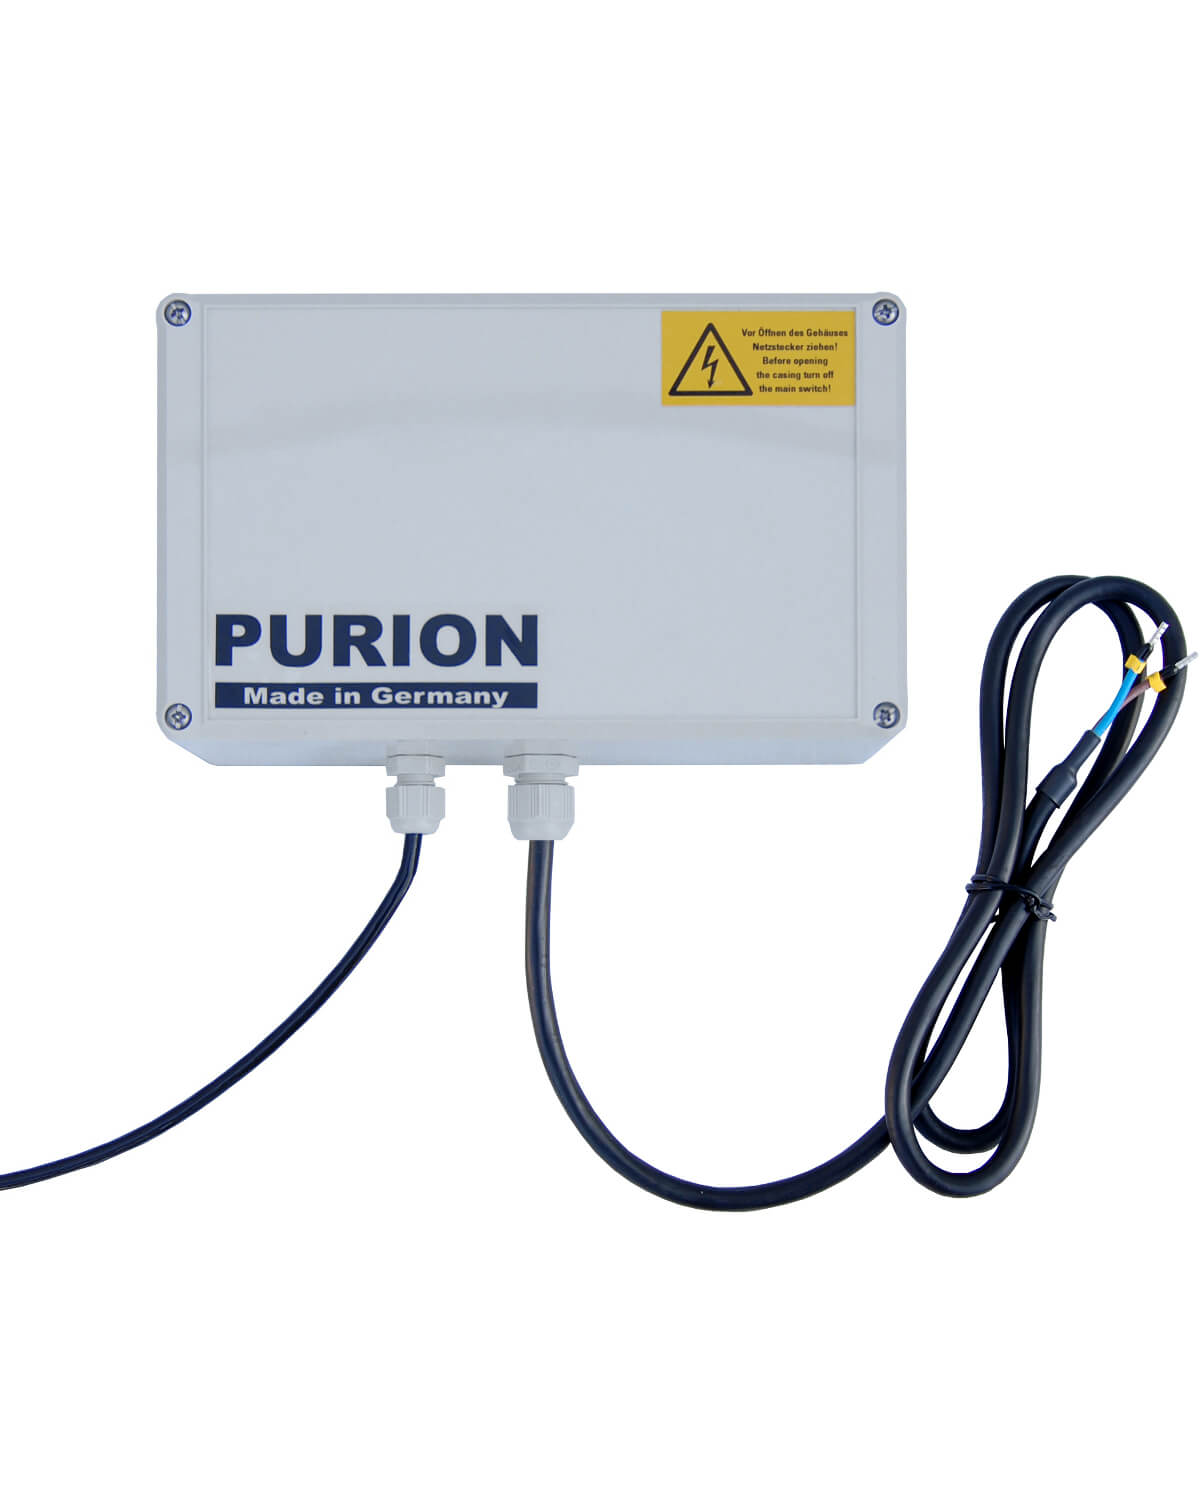 PURION 500 12 V/24 V CC Basic